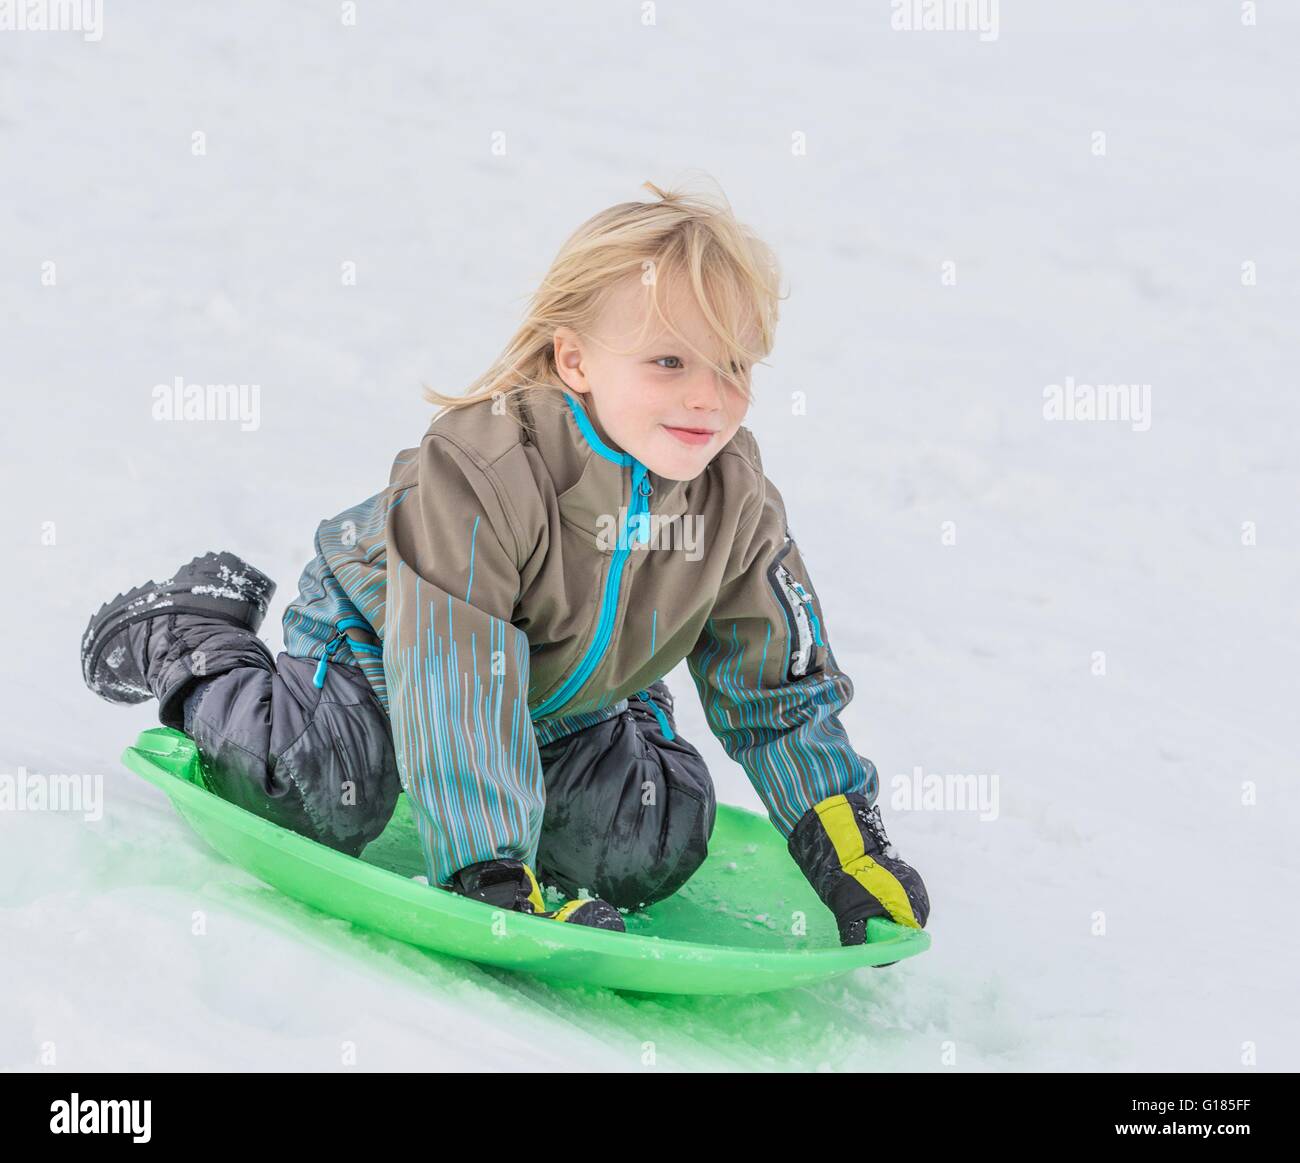 Garçon jouant sur toboggan dans la neige Banque D'Images